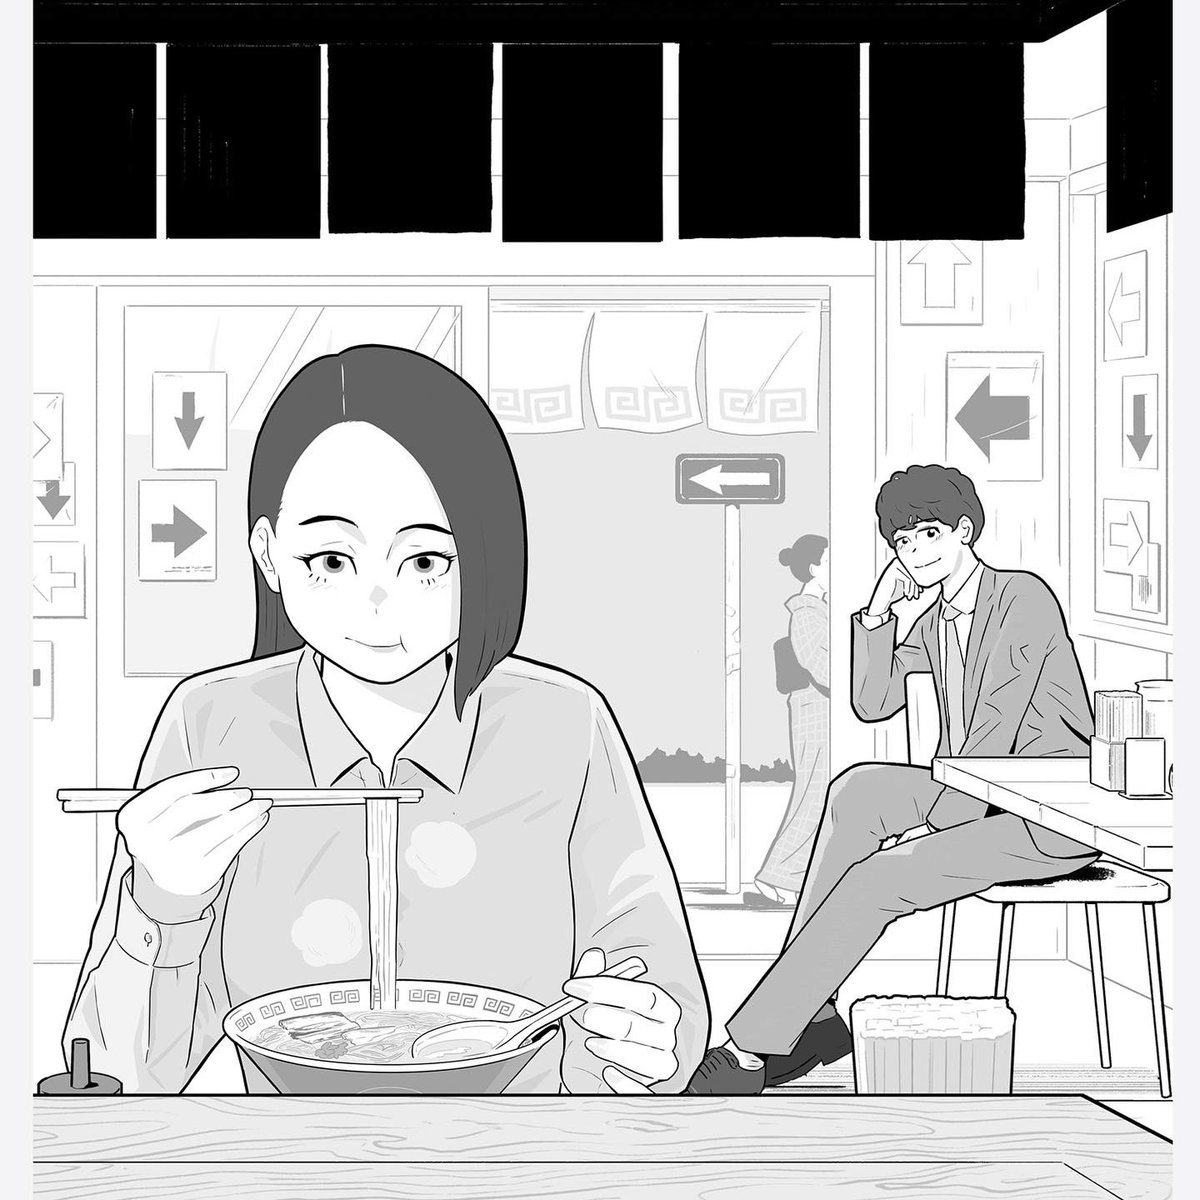 小説現代7月号にて新川帆立さん「競争の番人2(前編)」の扉絵を描いています。

チョイ読みコミックも◎

7月11日からはテレビドラマの放送も始まるようです。

#競争の番人
#新川帆立 